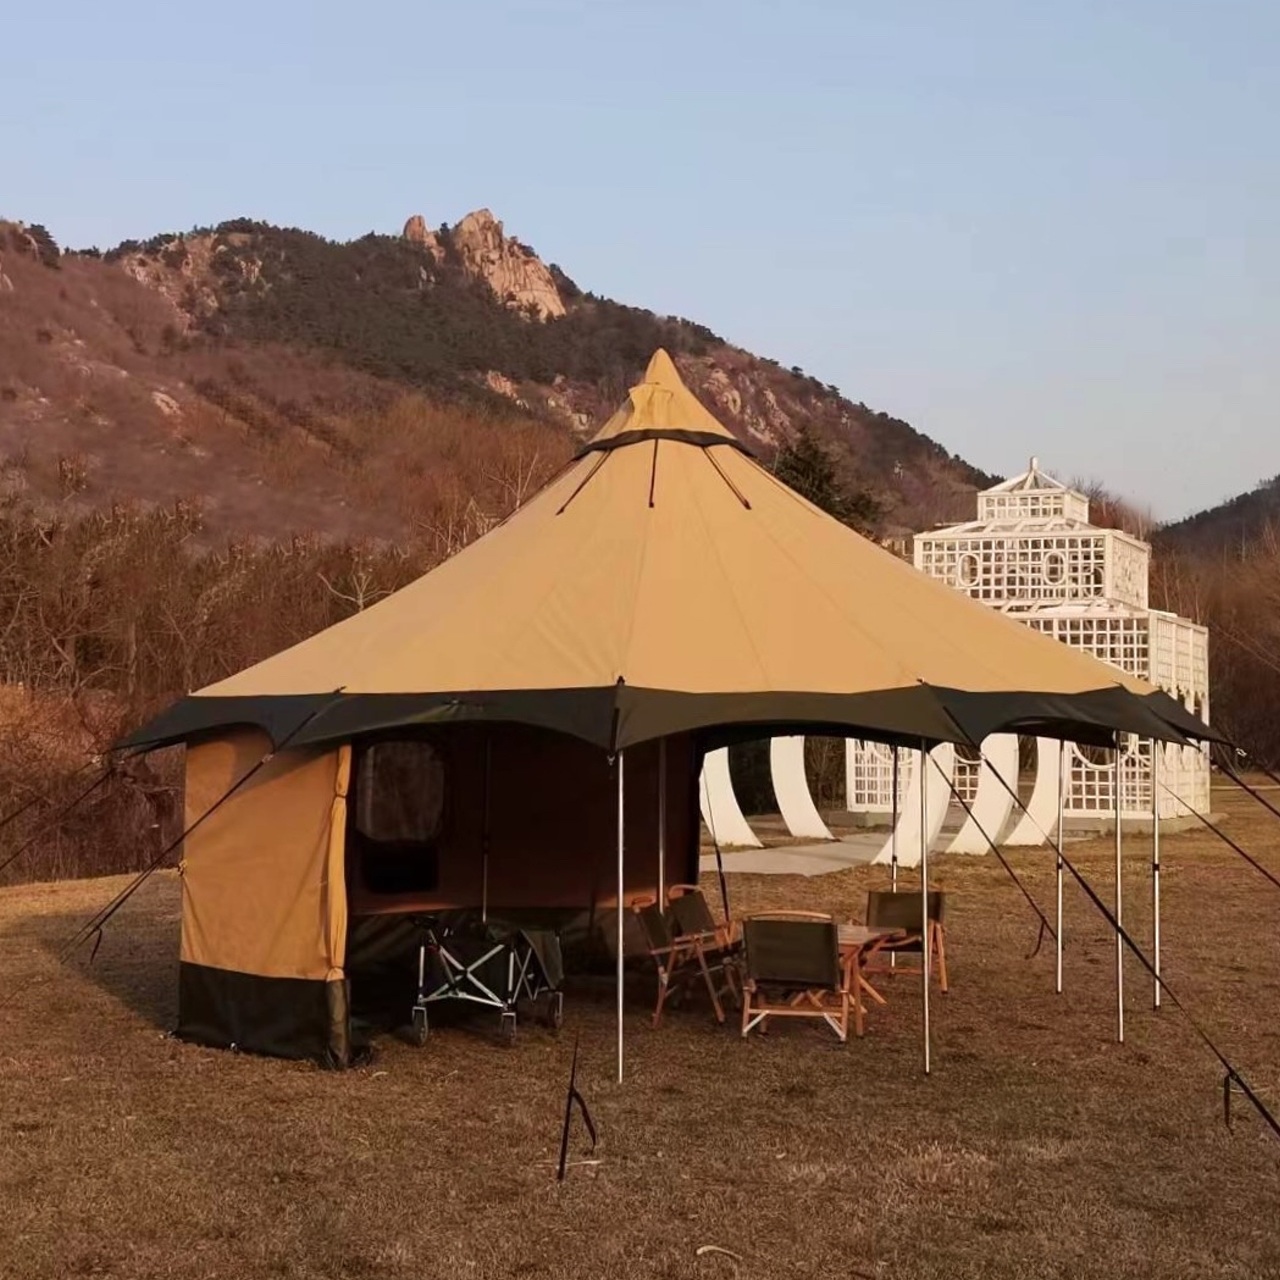 Большая туристическая палатка True Brands Tibet Tent 15 Sky Pro для кемпинга, путешествий, отдыха на природе